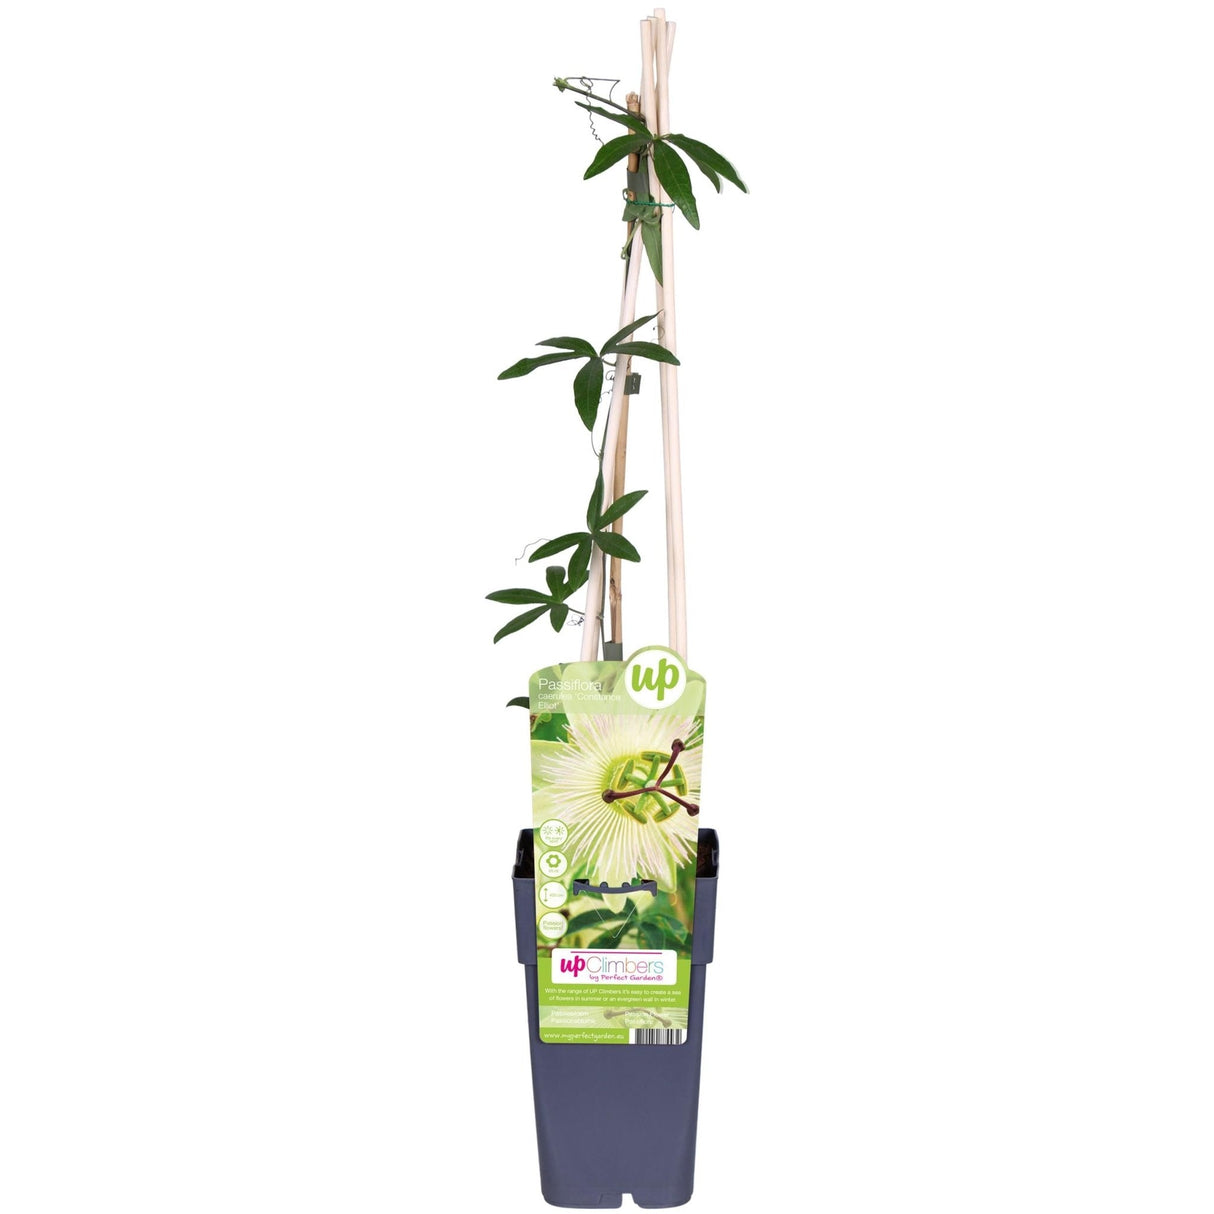 Livraison plante Passiflora bleu 'Constance Elliot' - ↨65cm - Ø15 - plante d'extérieur grimpante fleurie